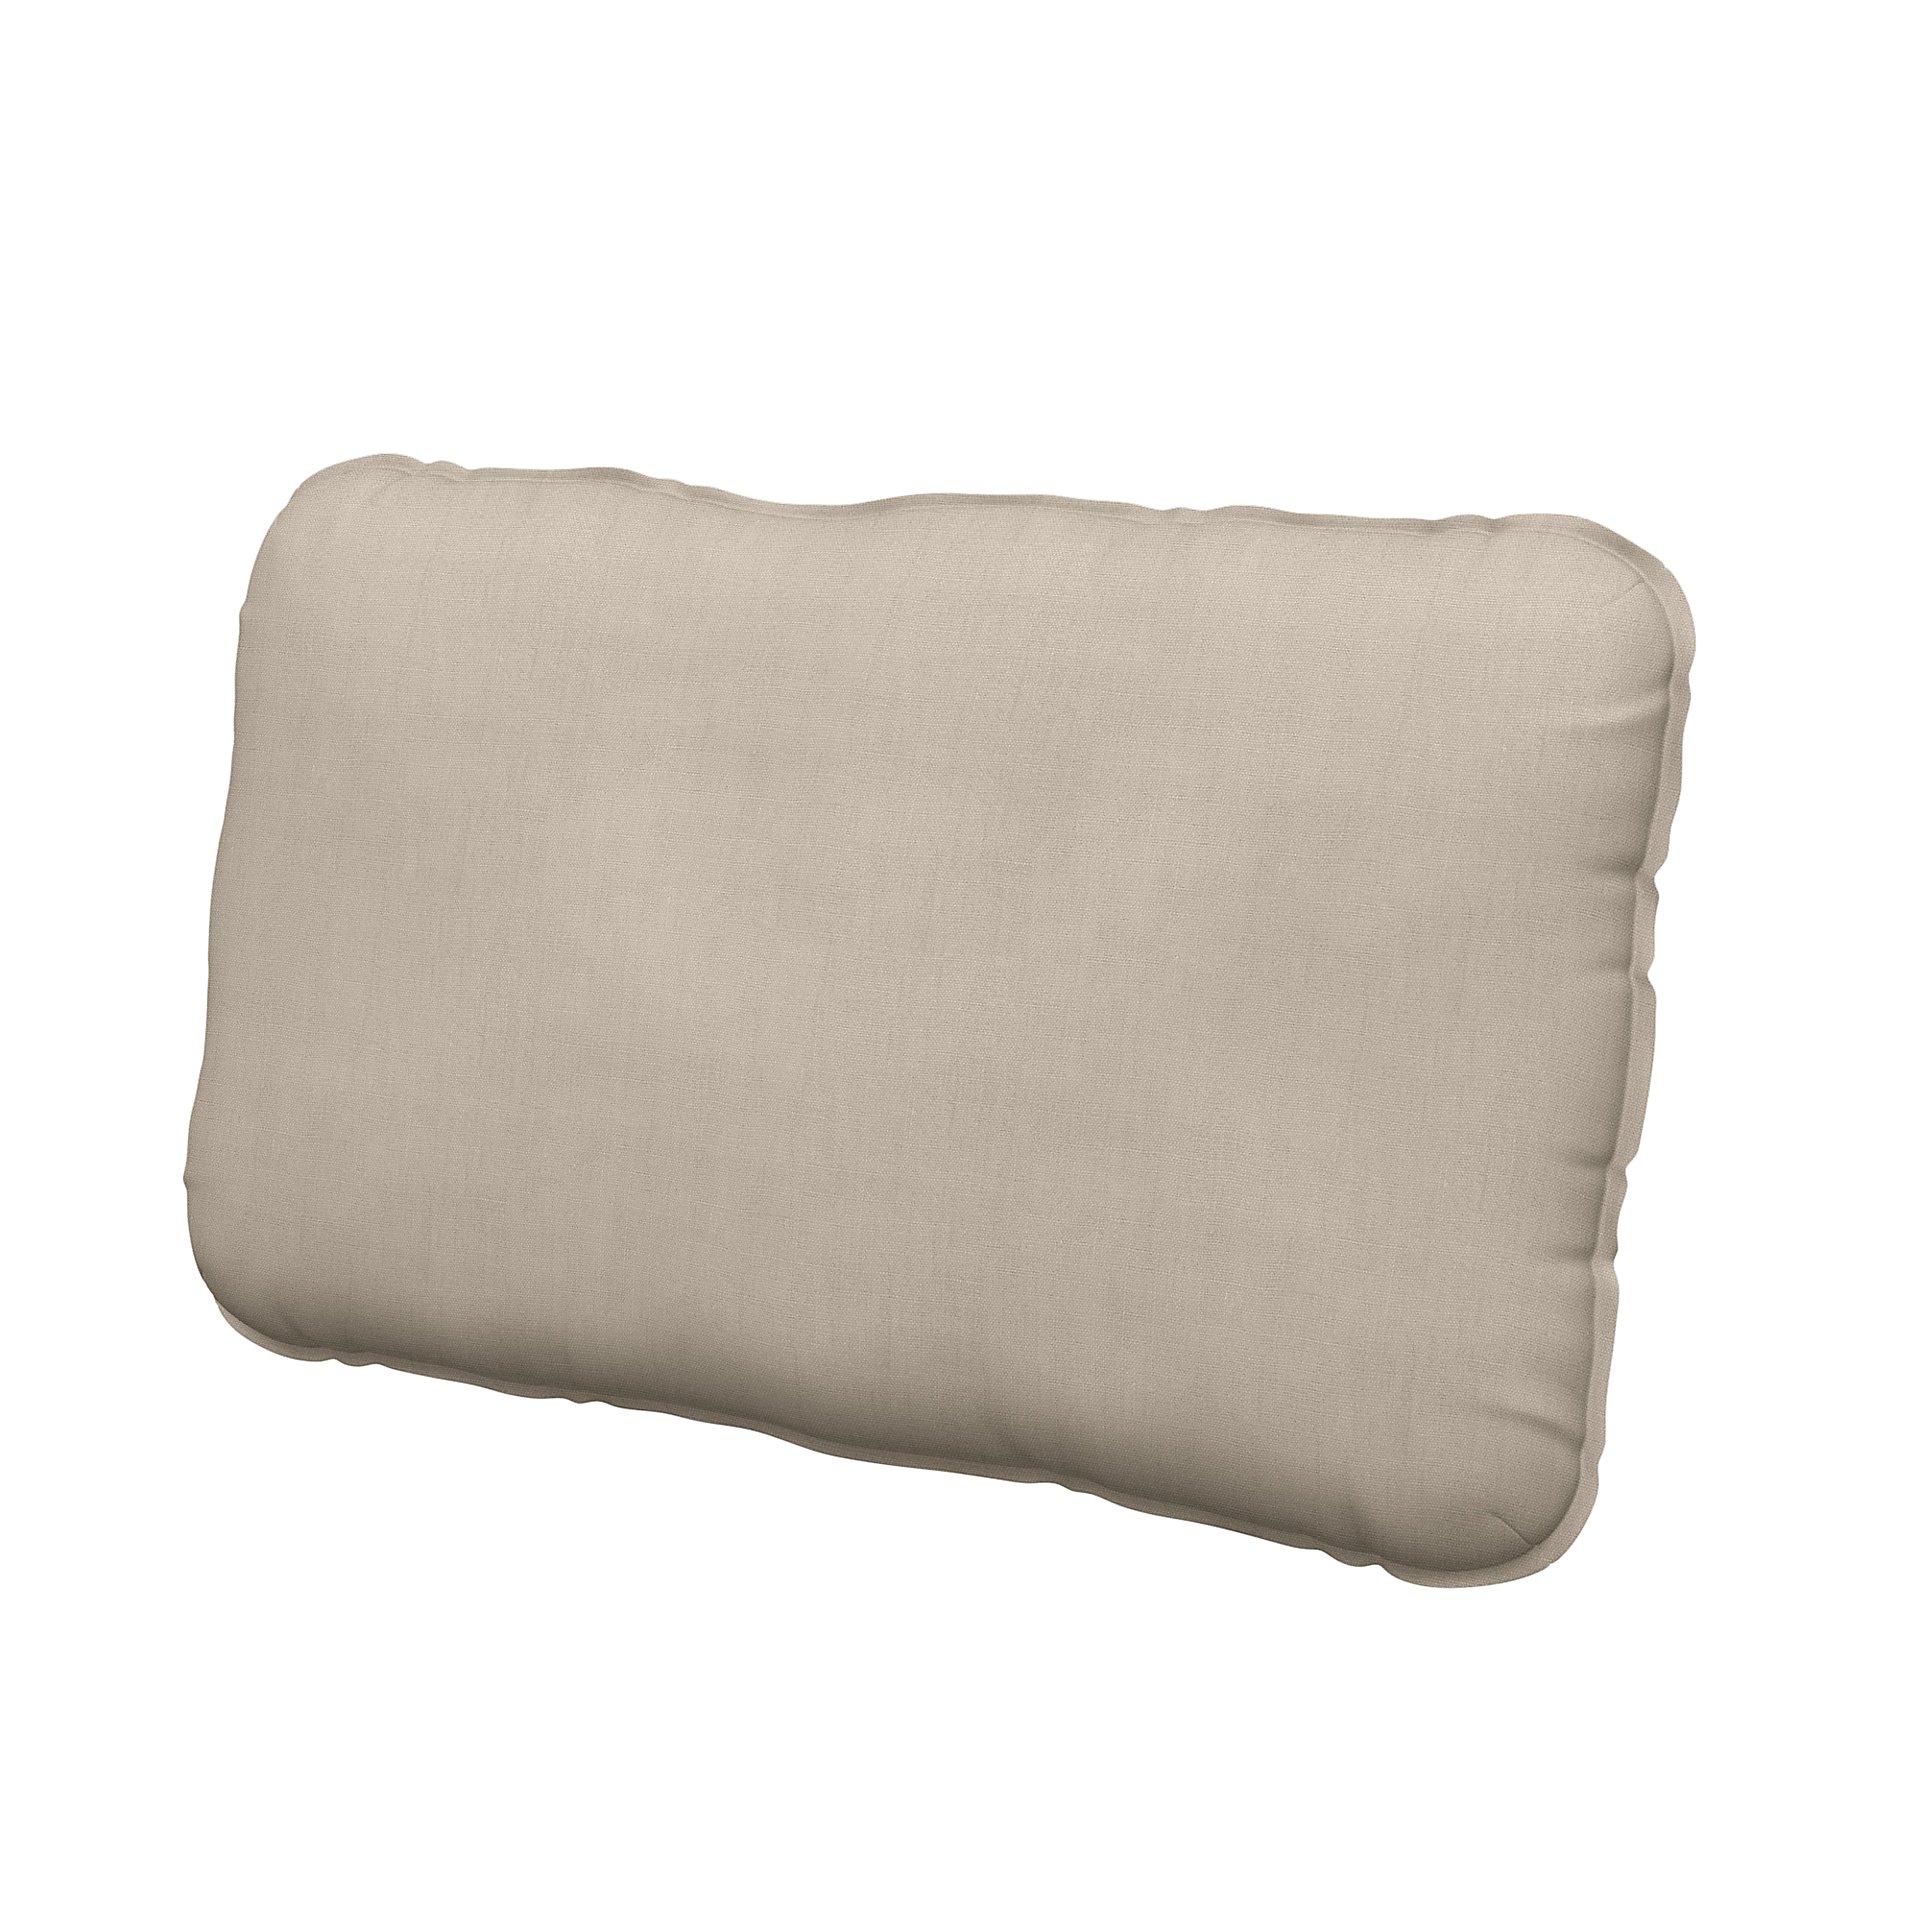 IKEA - Vallentuna back cushion cover 40x75cm, Parchment, Linen - Bemz